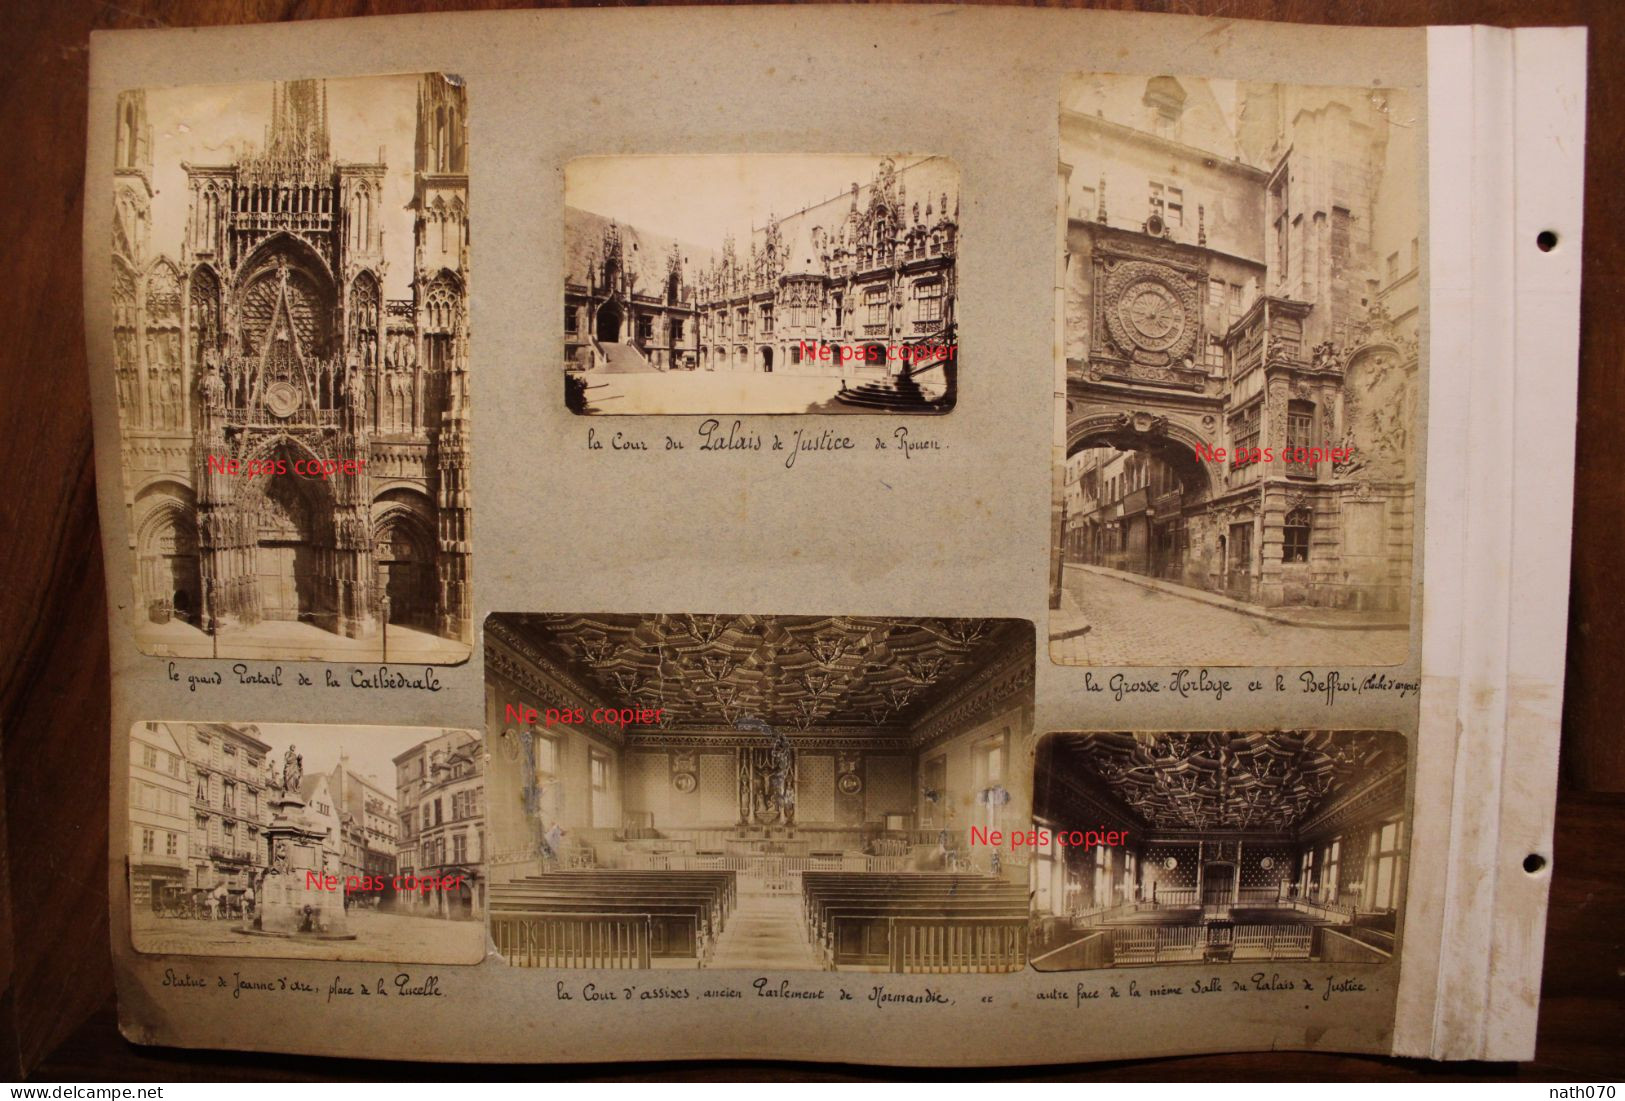 12 Photo 1890's Rouen Palais De Justice Beffroi Tirage Print Vintage Albumen Albuminé - Orte